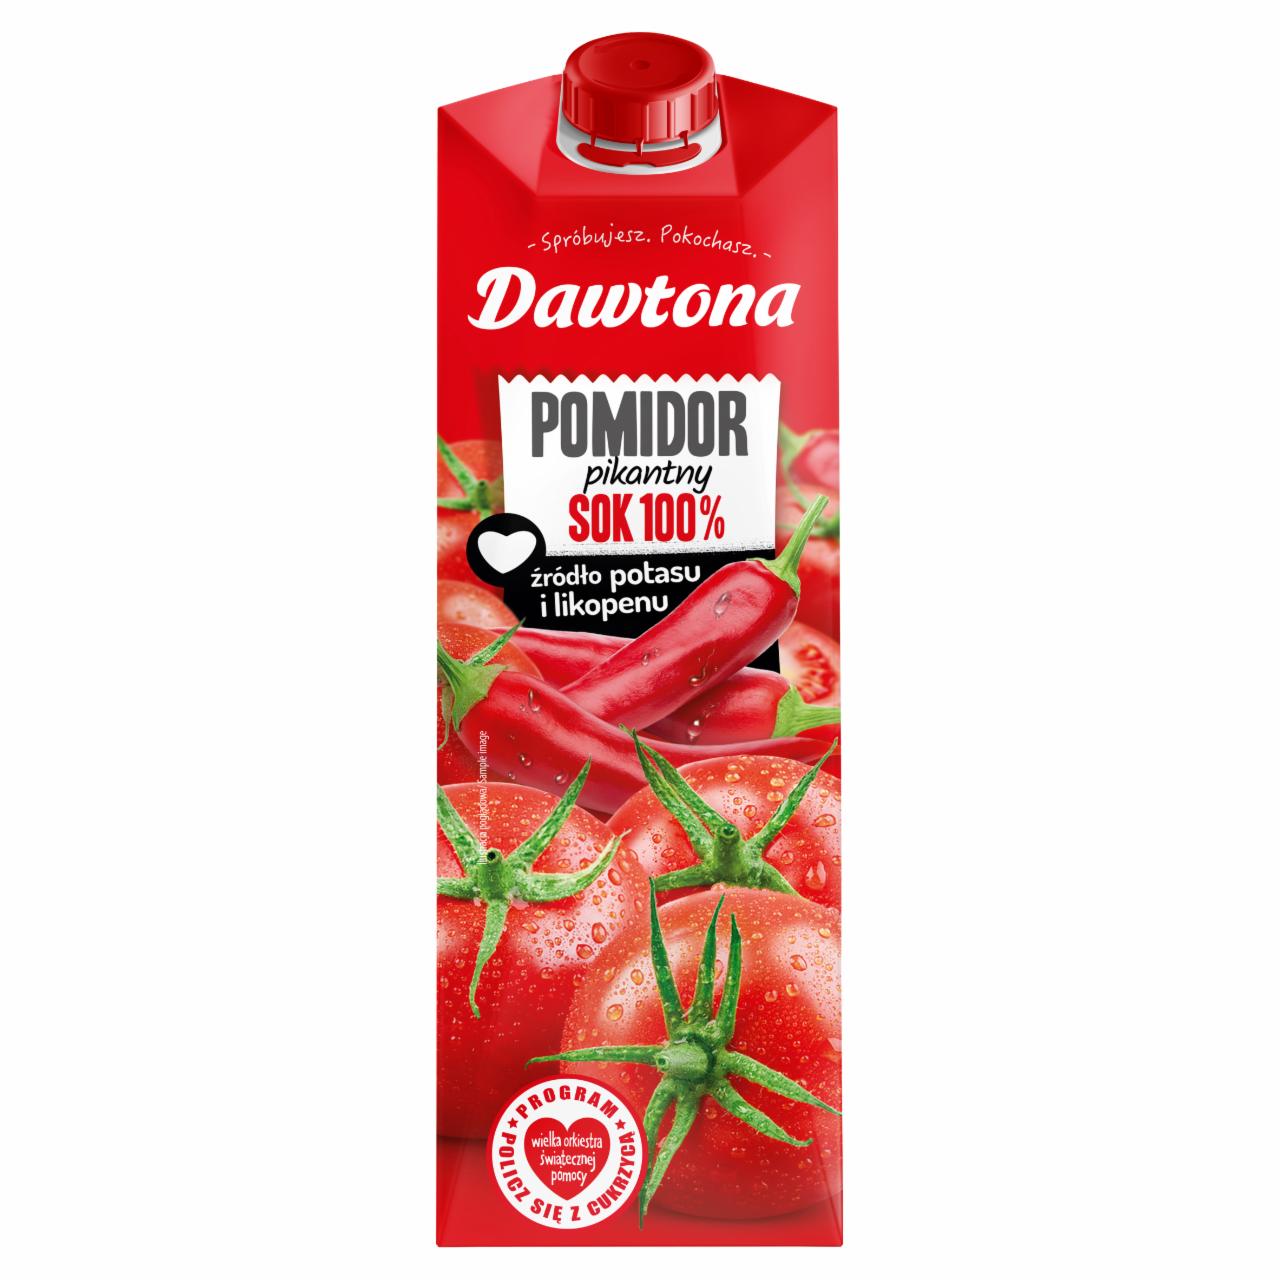 Zdjęcia - Dawtona Sok 100% pomidor pikantny 1 l